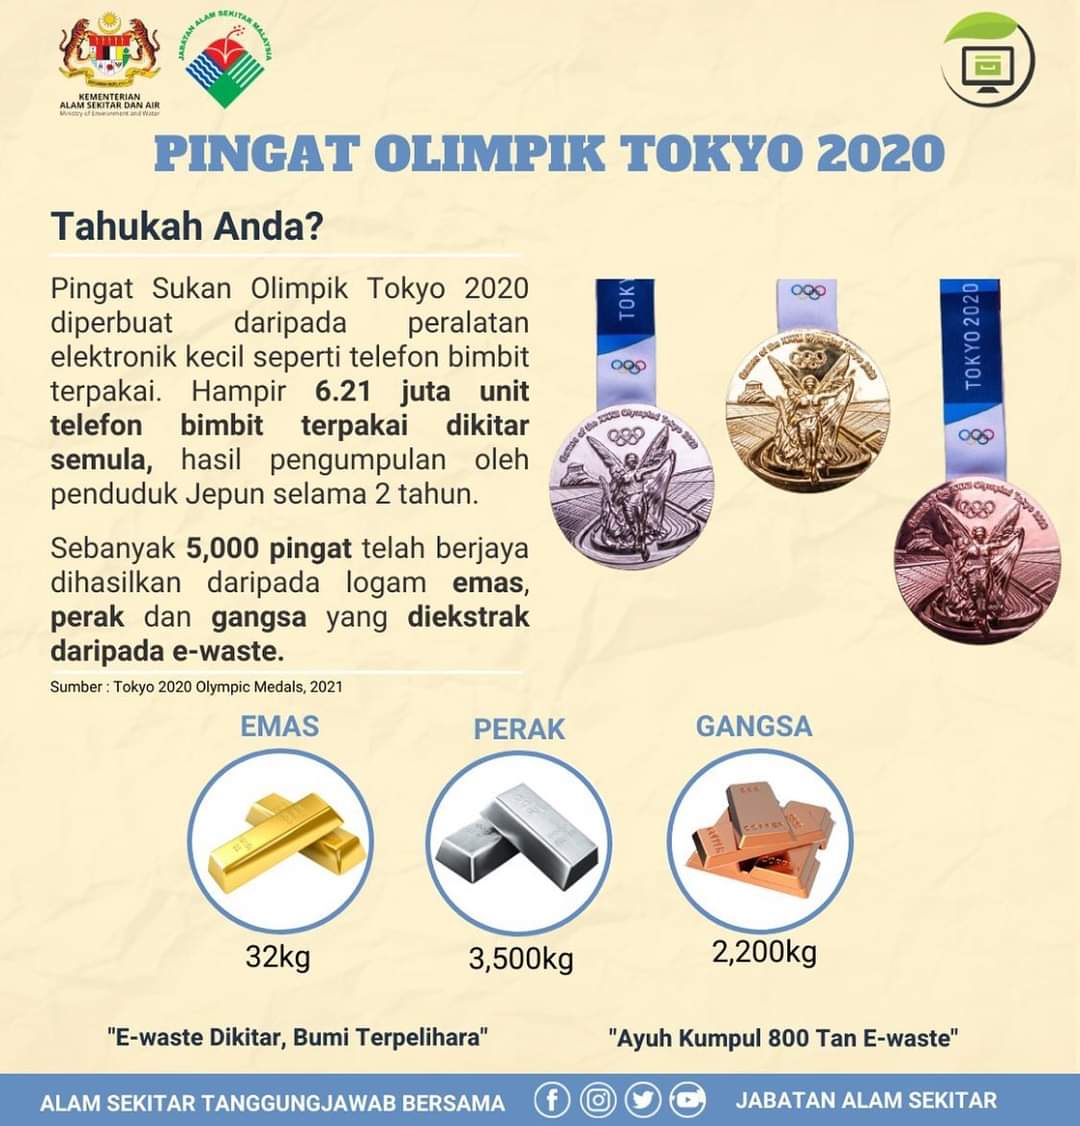 Acara sukan olimpik 2020